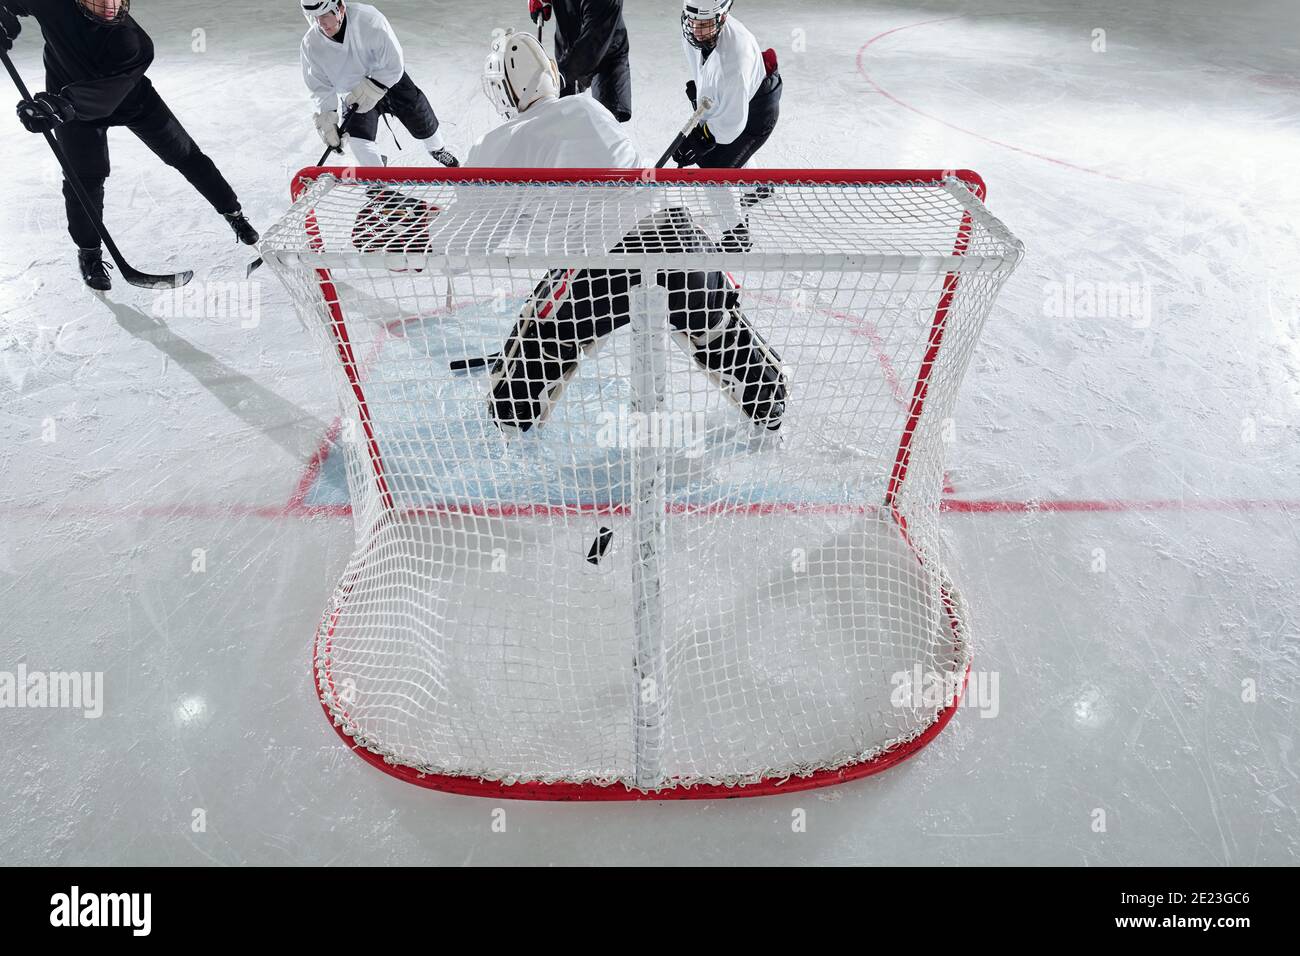 Rückansicht des Eishockeyspielers in Sportuniform und schützend Helm steht im Netz vor der Gruppe von Rivals angreifenden Puck während des Spiels Stockfoto